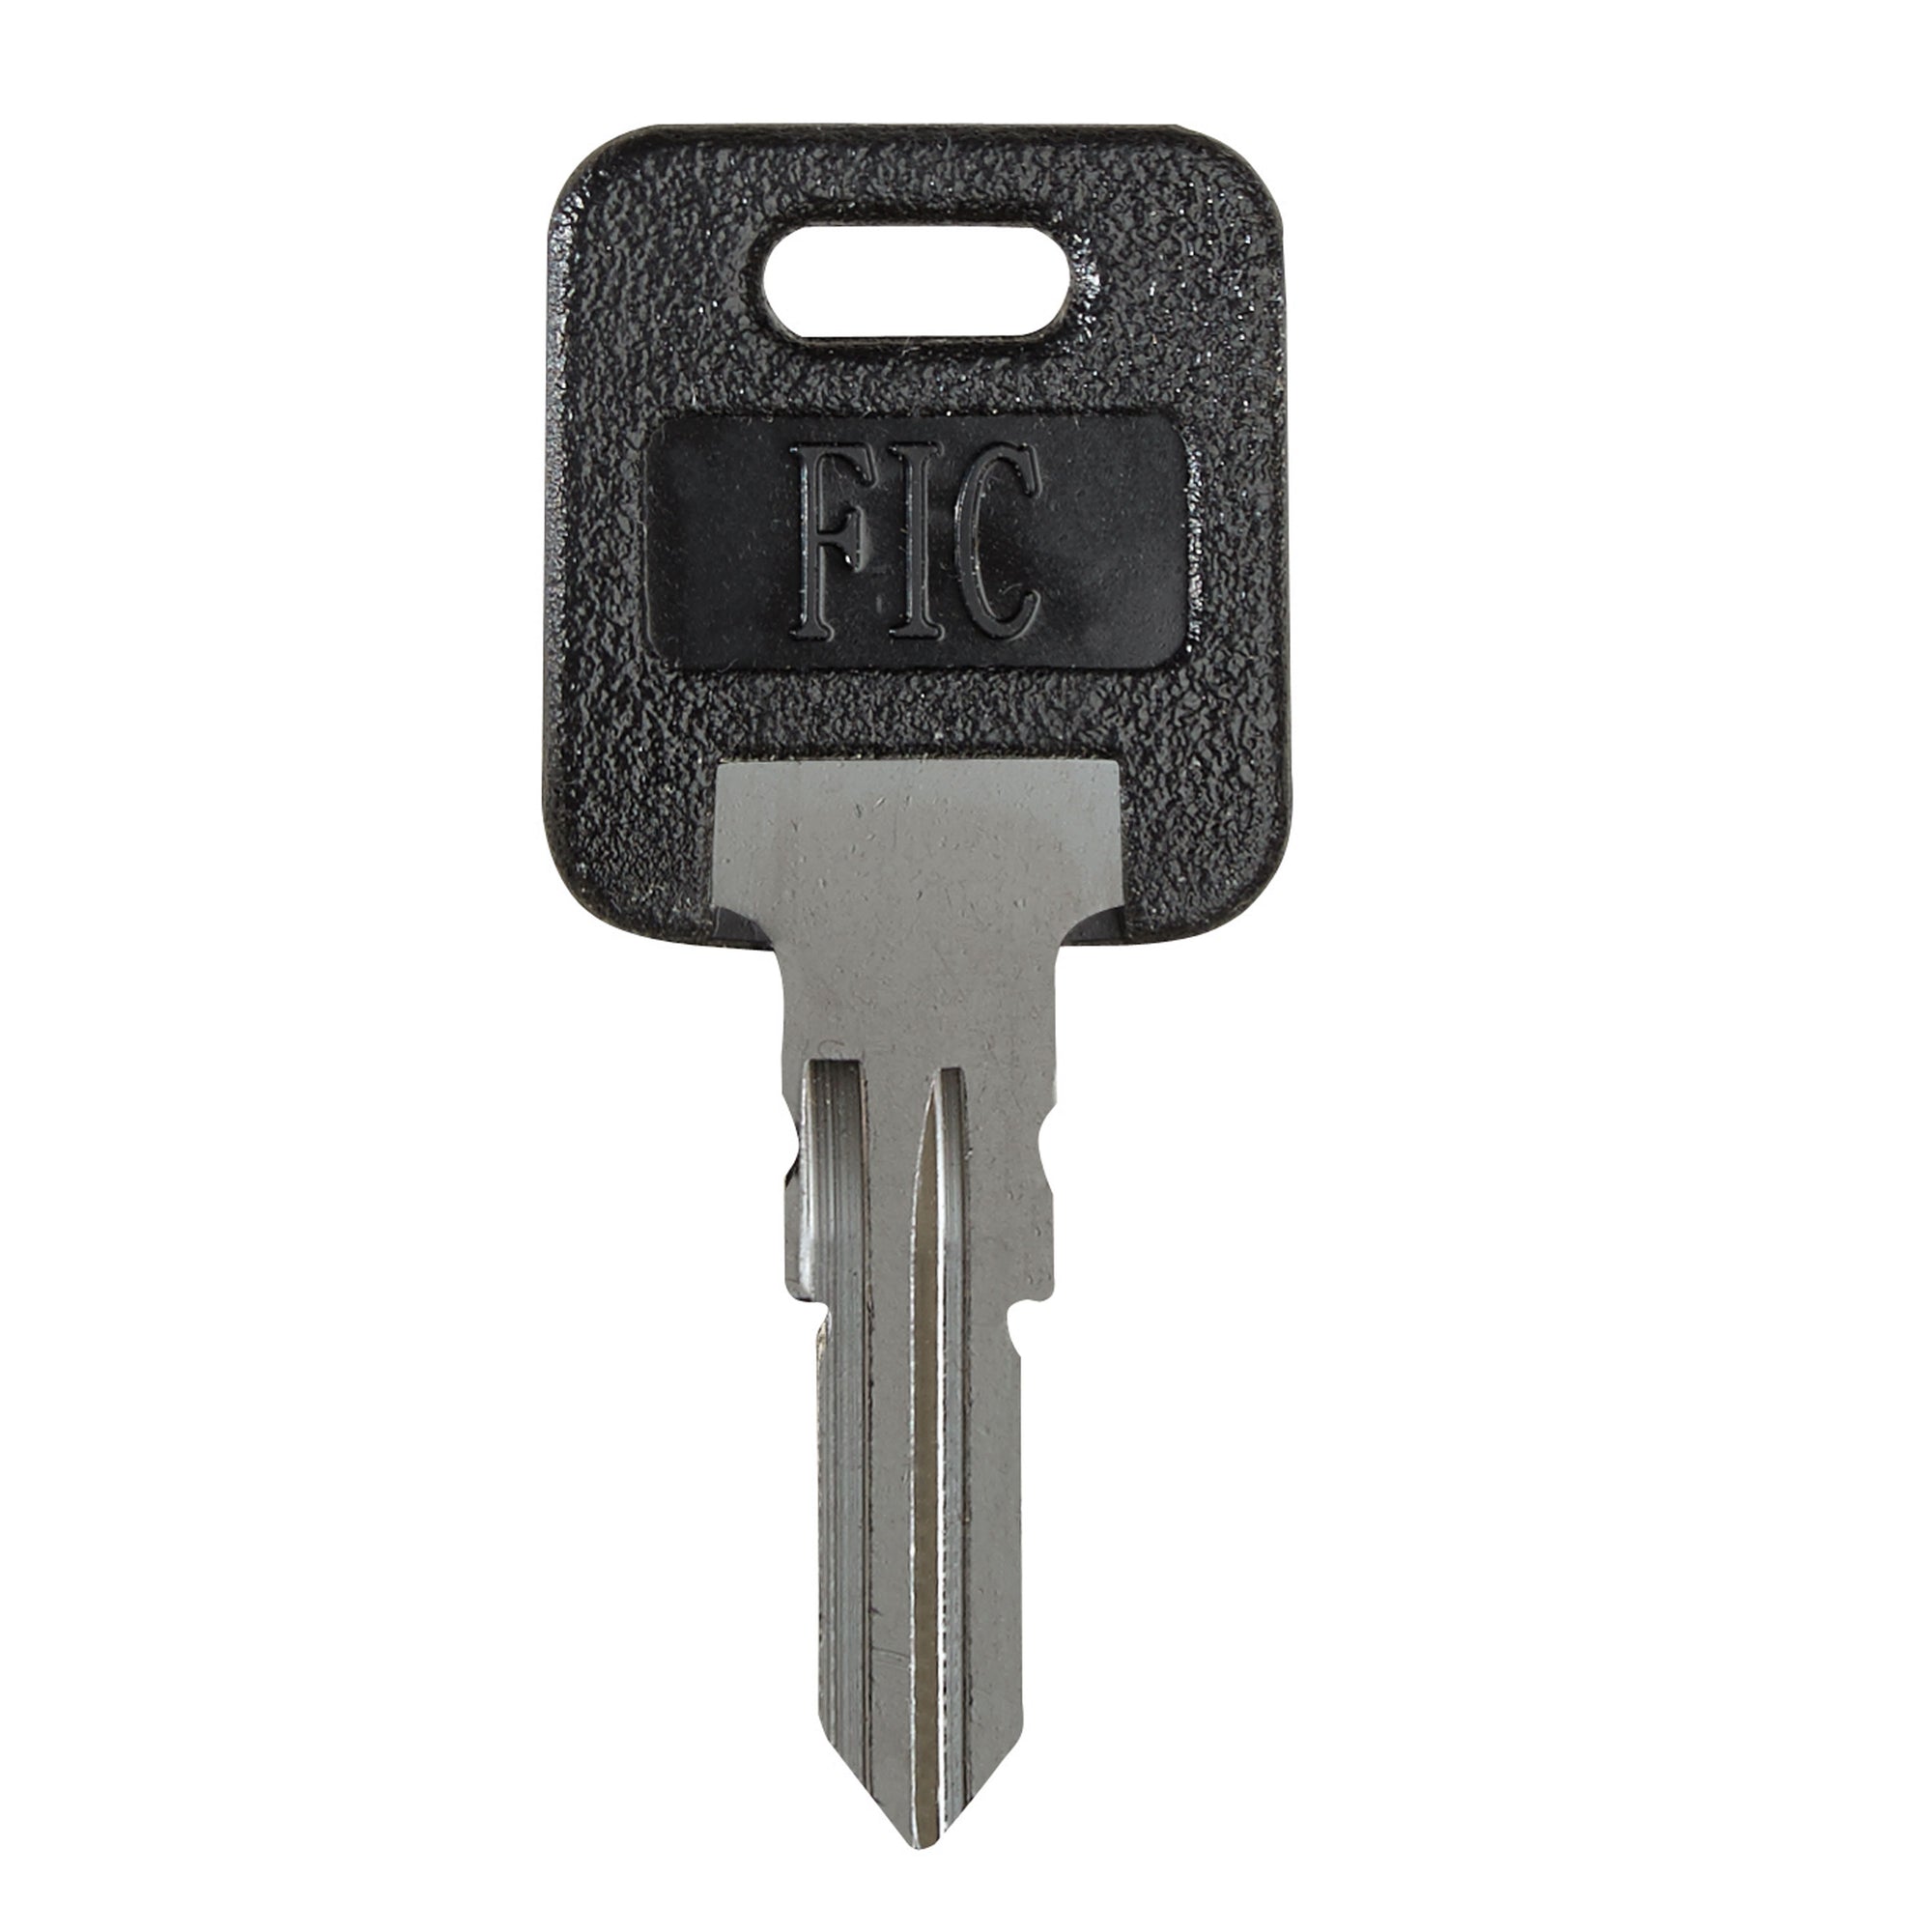 RV Designer T800 FIC Key Blank for Fastec Travel Trailer Locks